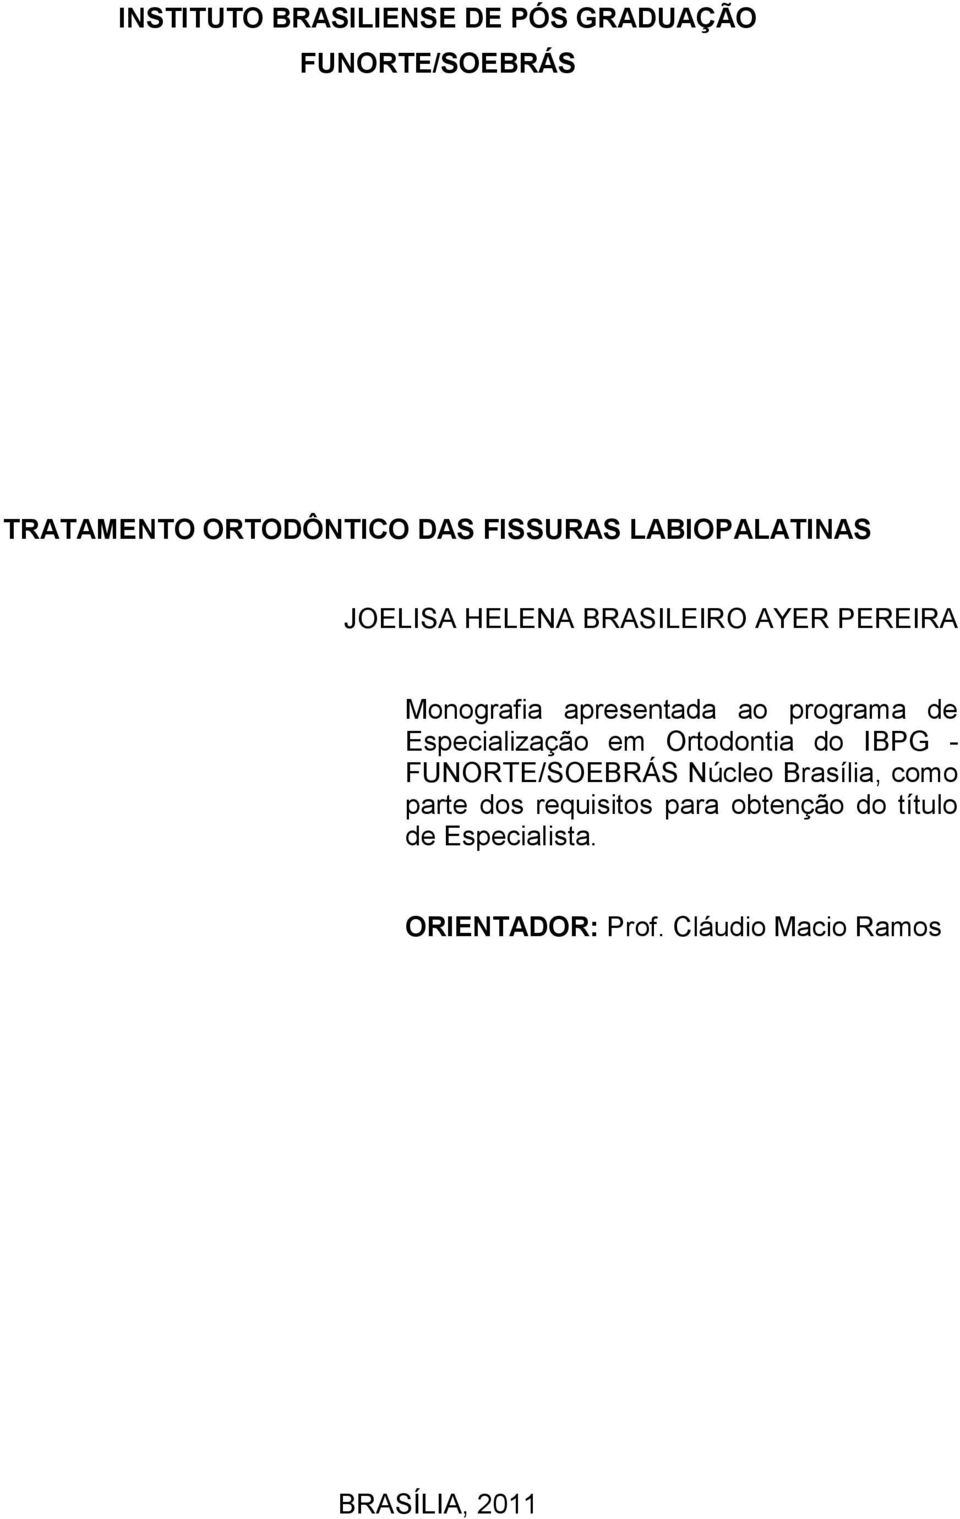 Especialização em Ortodontia do IBPG - FUNORTE/SOEBRÁS Núcleo Brasília, como parte dos